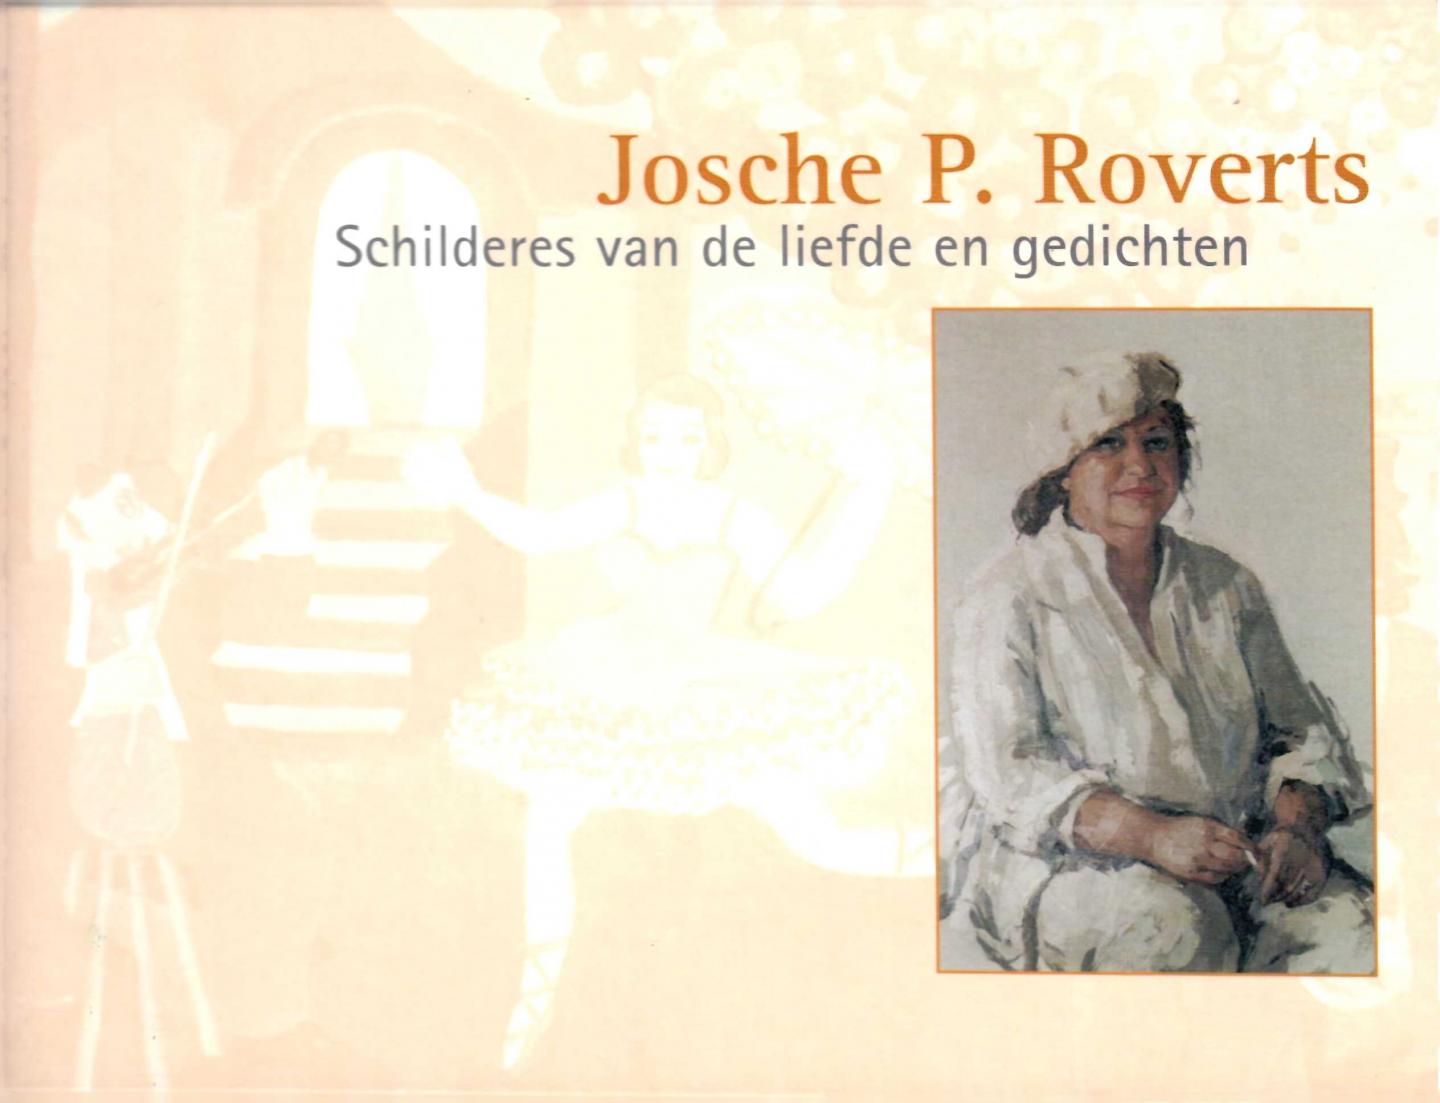 Roverts, Josche P. - Josche P. Roverts. schilderes van de liefde en gedichten.